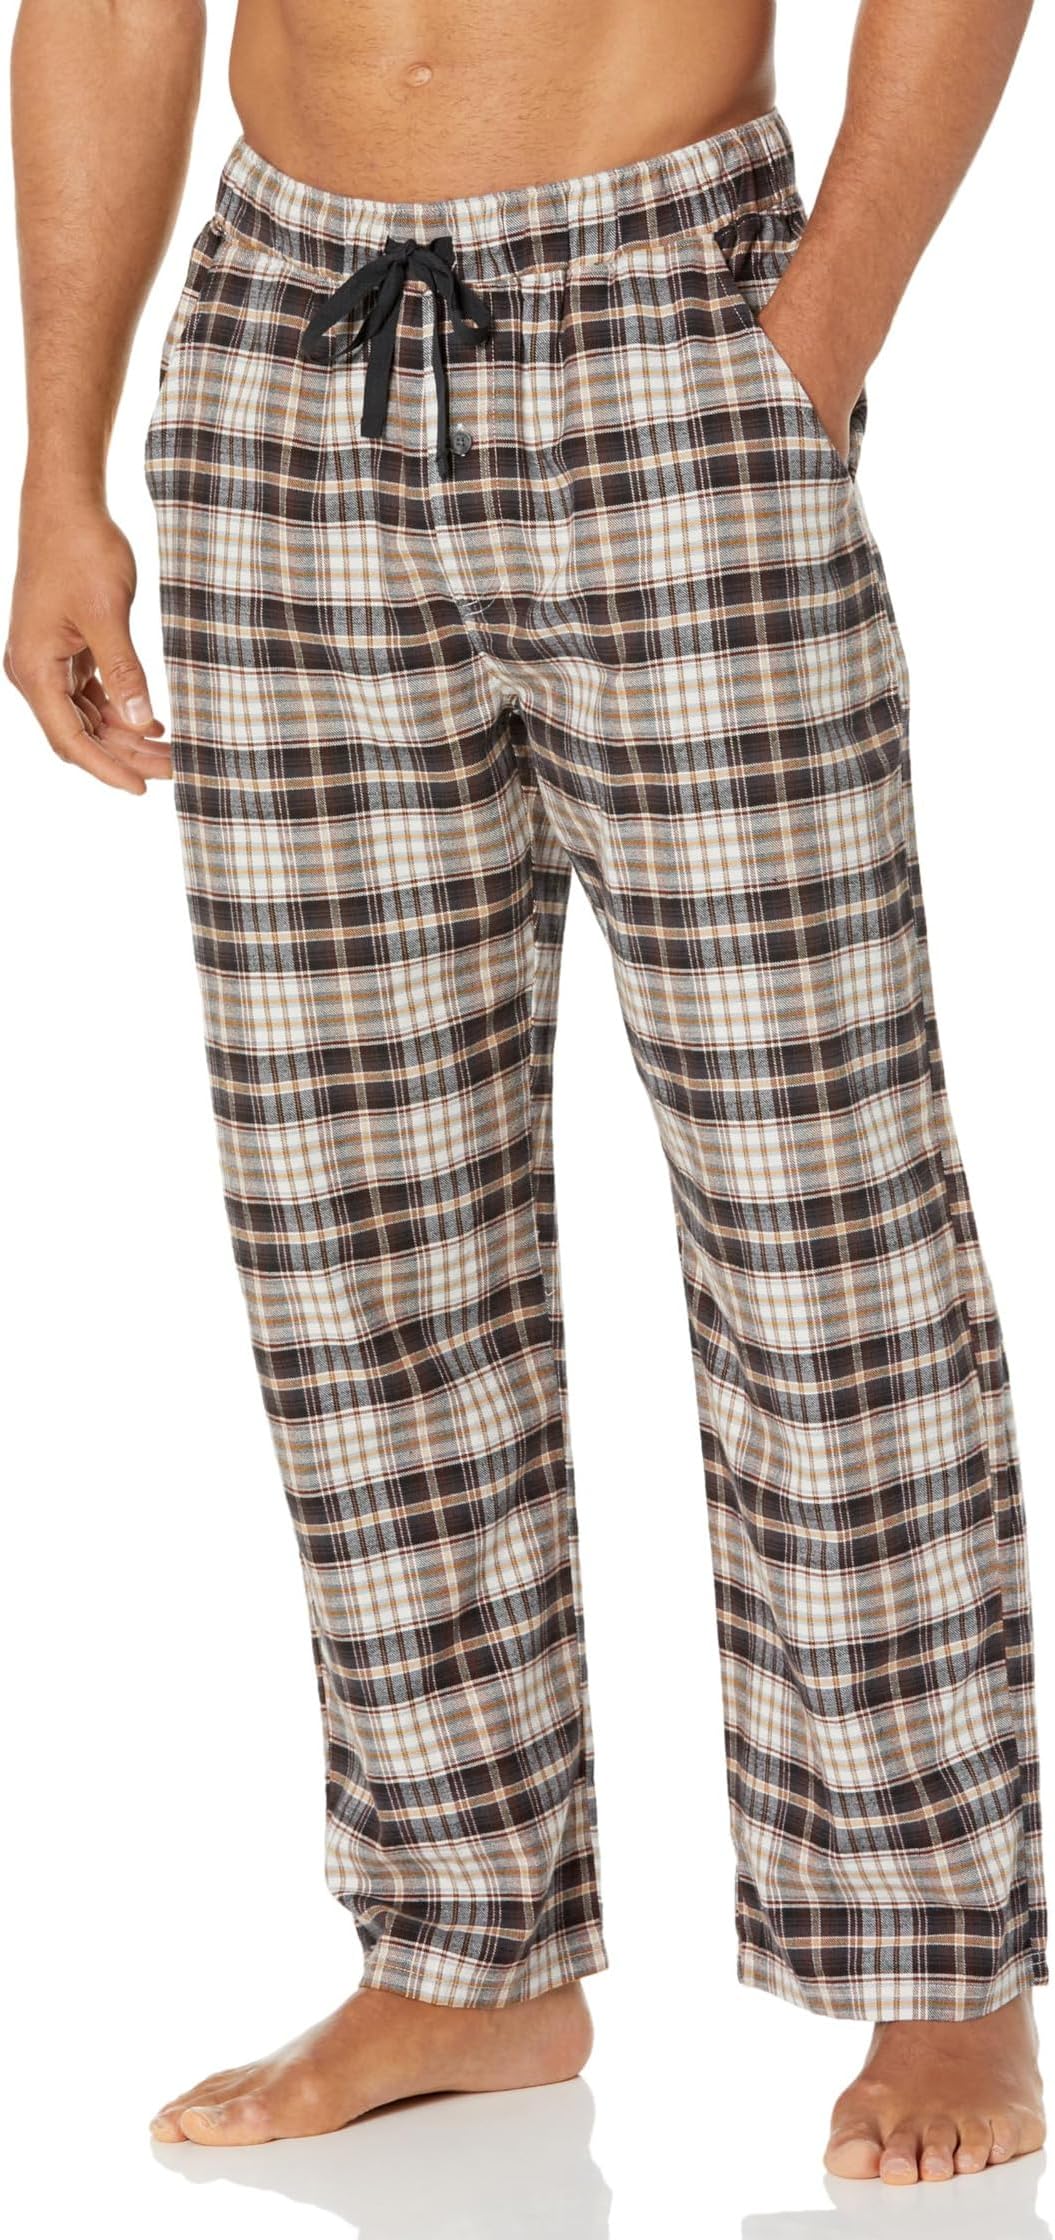 Пижамные брюки Pendleton, цвет Tan/Brown/Black Plaid